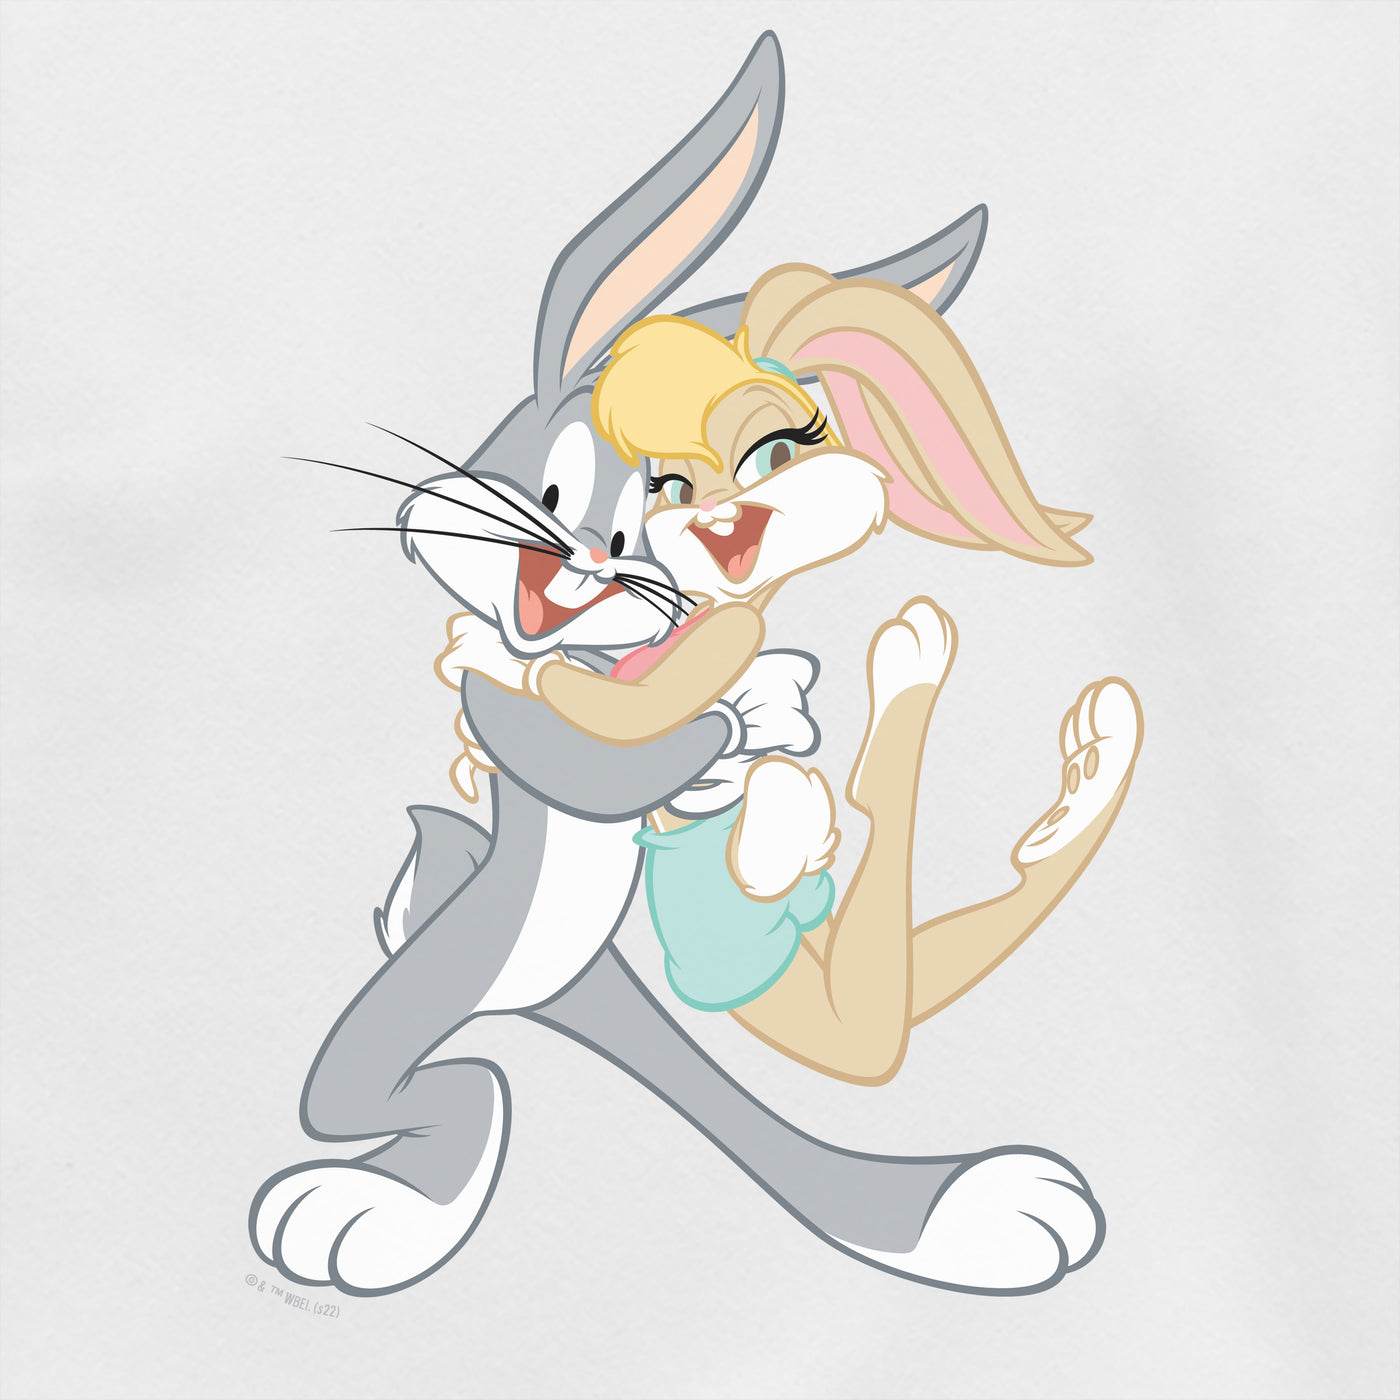 Looney Tunes Bugs and Lola Bunny Unisex Crewneck Sweatshirt